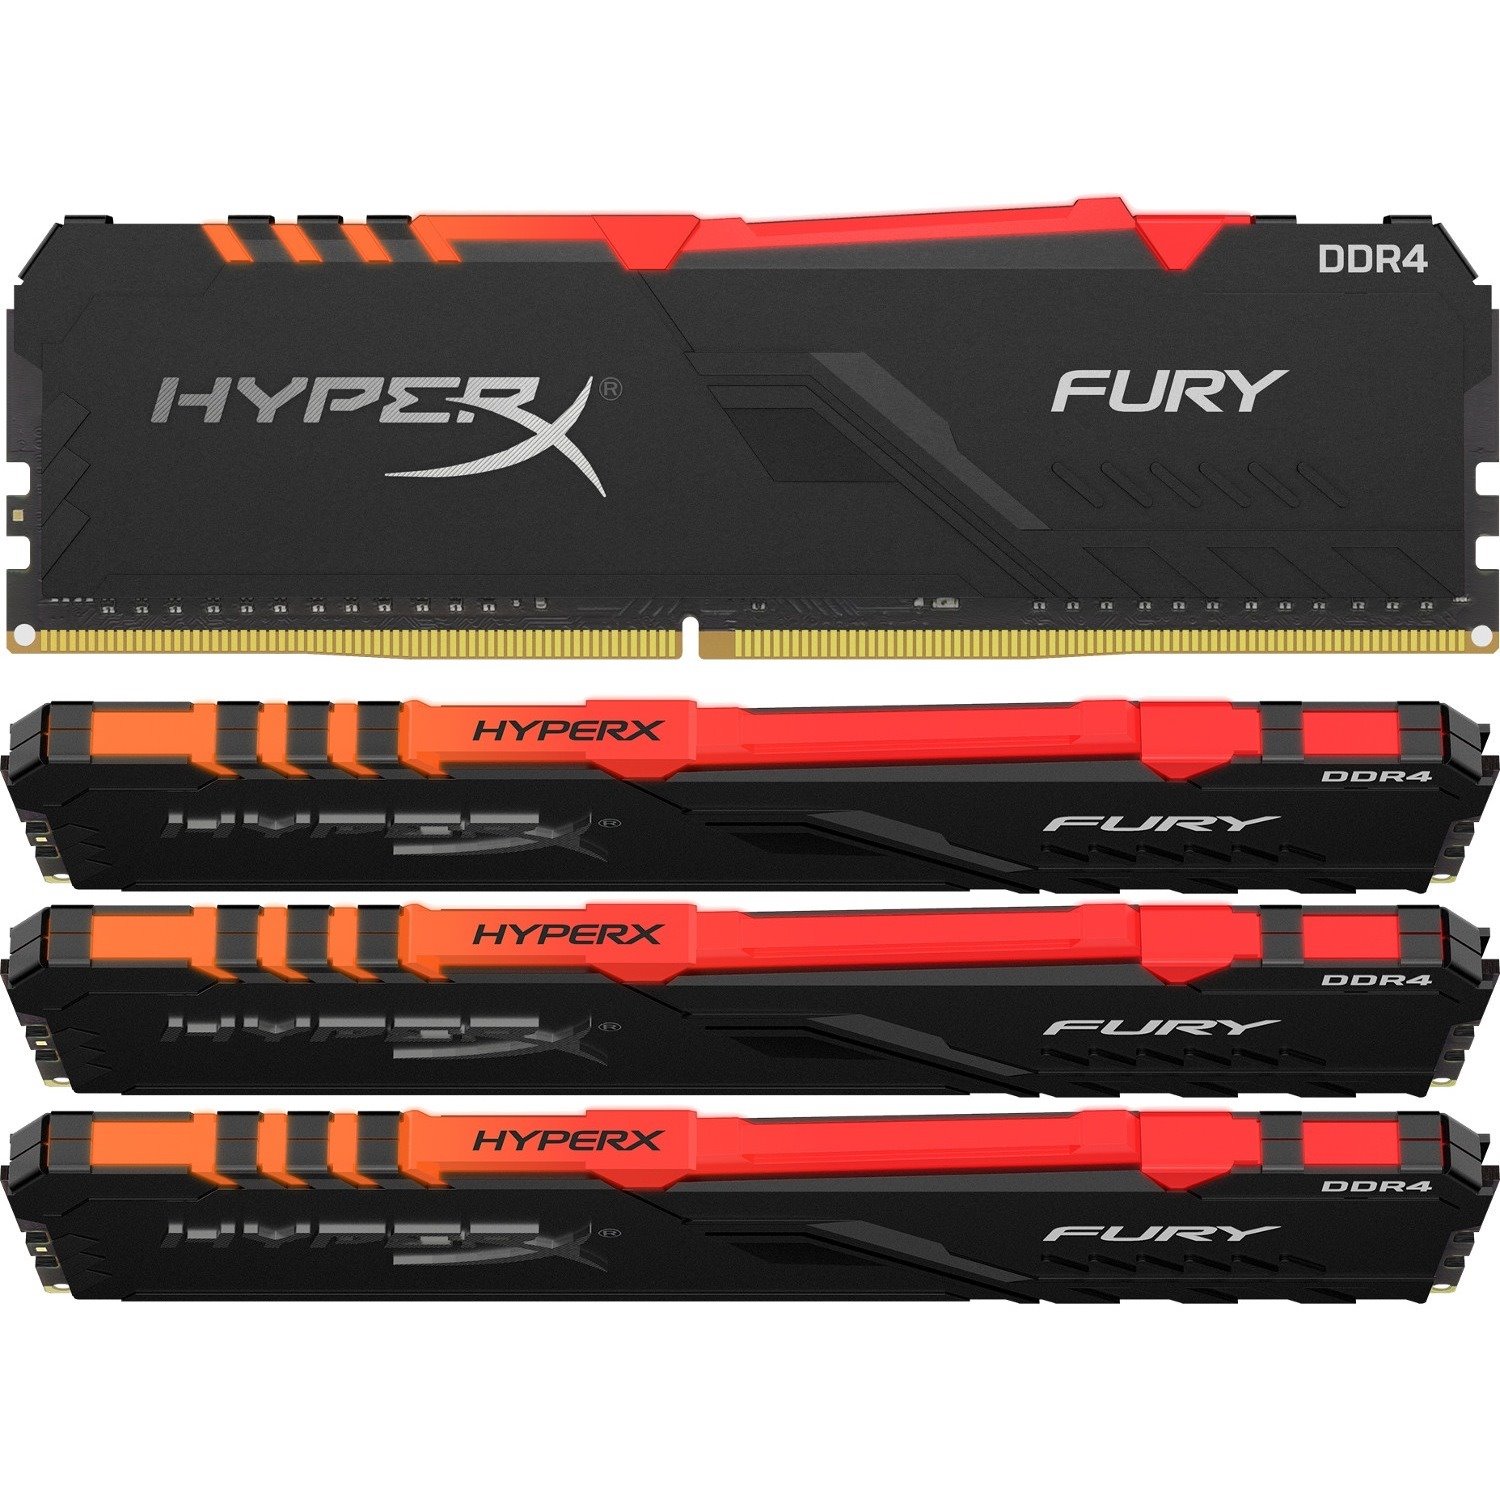 HyperX FURY 64GB (4 x 16GB) DDR4 SDRAM Memory Kit